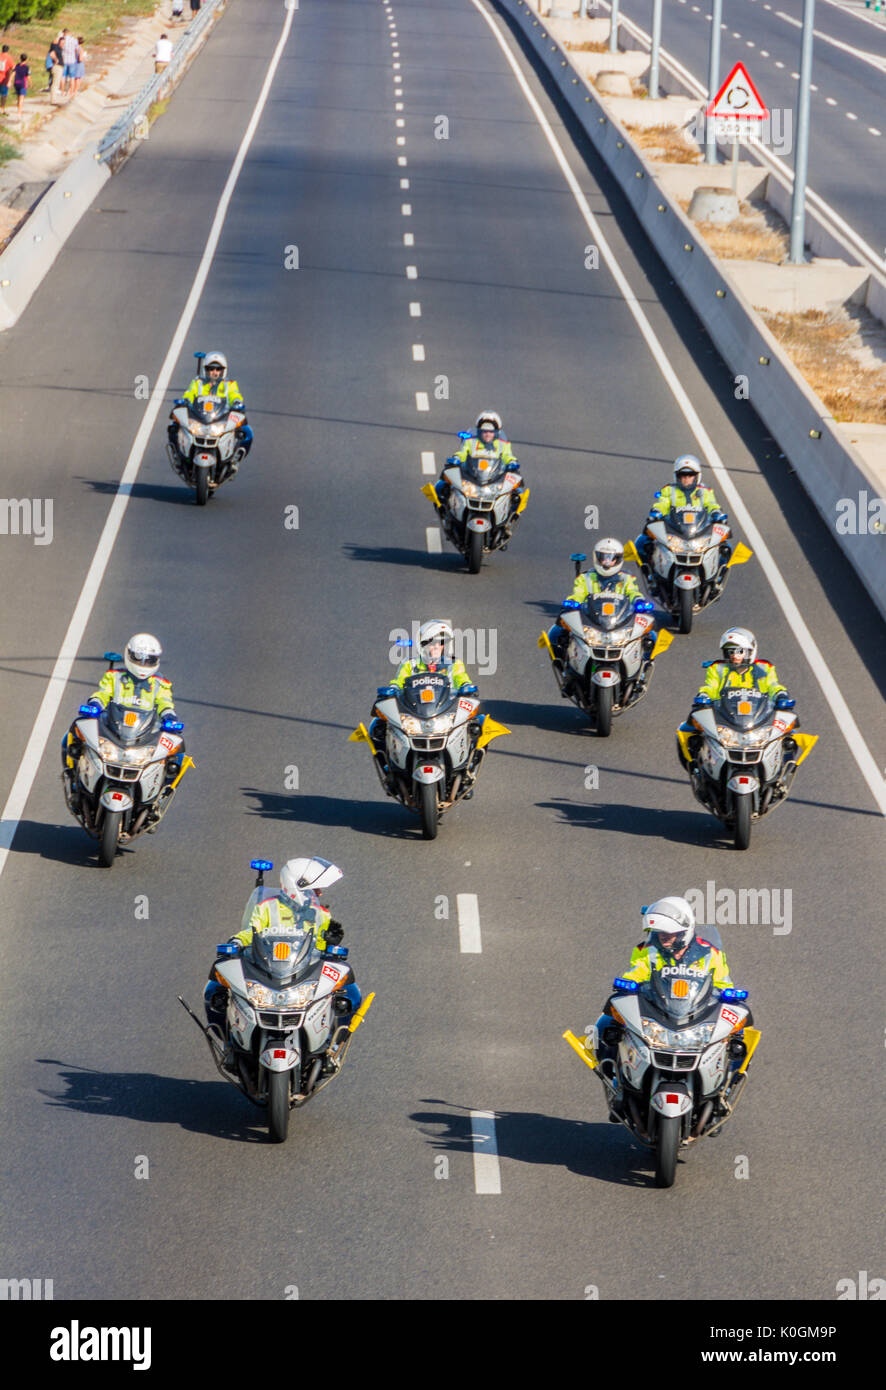 Tarragona, Spanien - 22. August 2017: Polizisten auf dem Fahrrad über den Wettbewerb La Vuelta Ciclista Spaniens beobachten Stockfoto